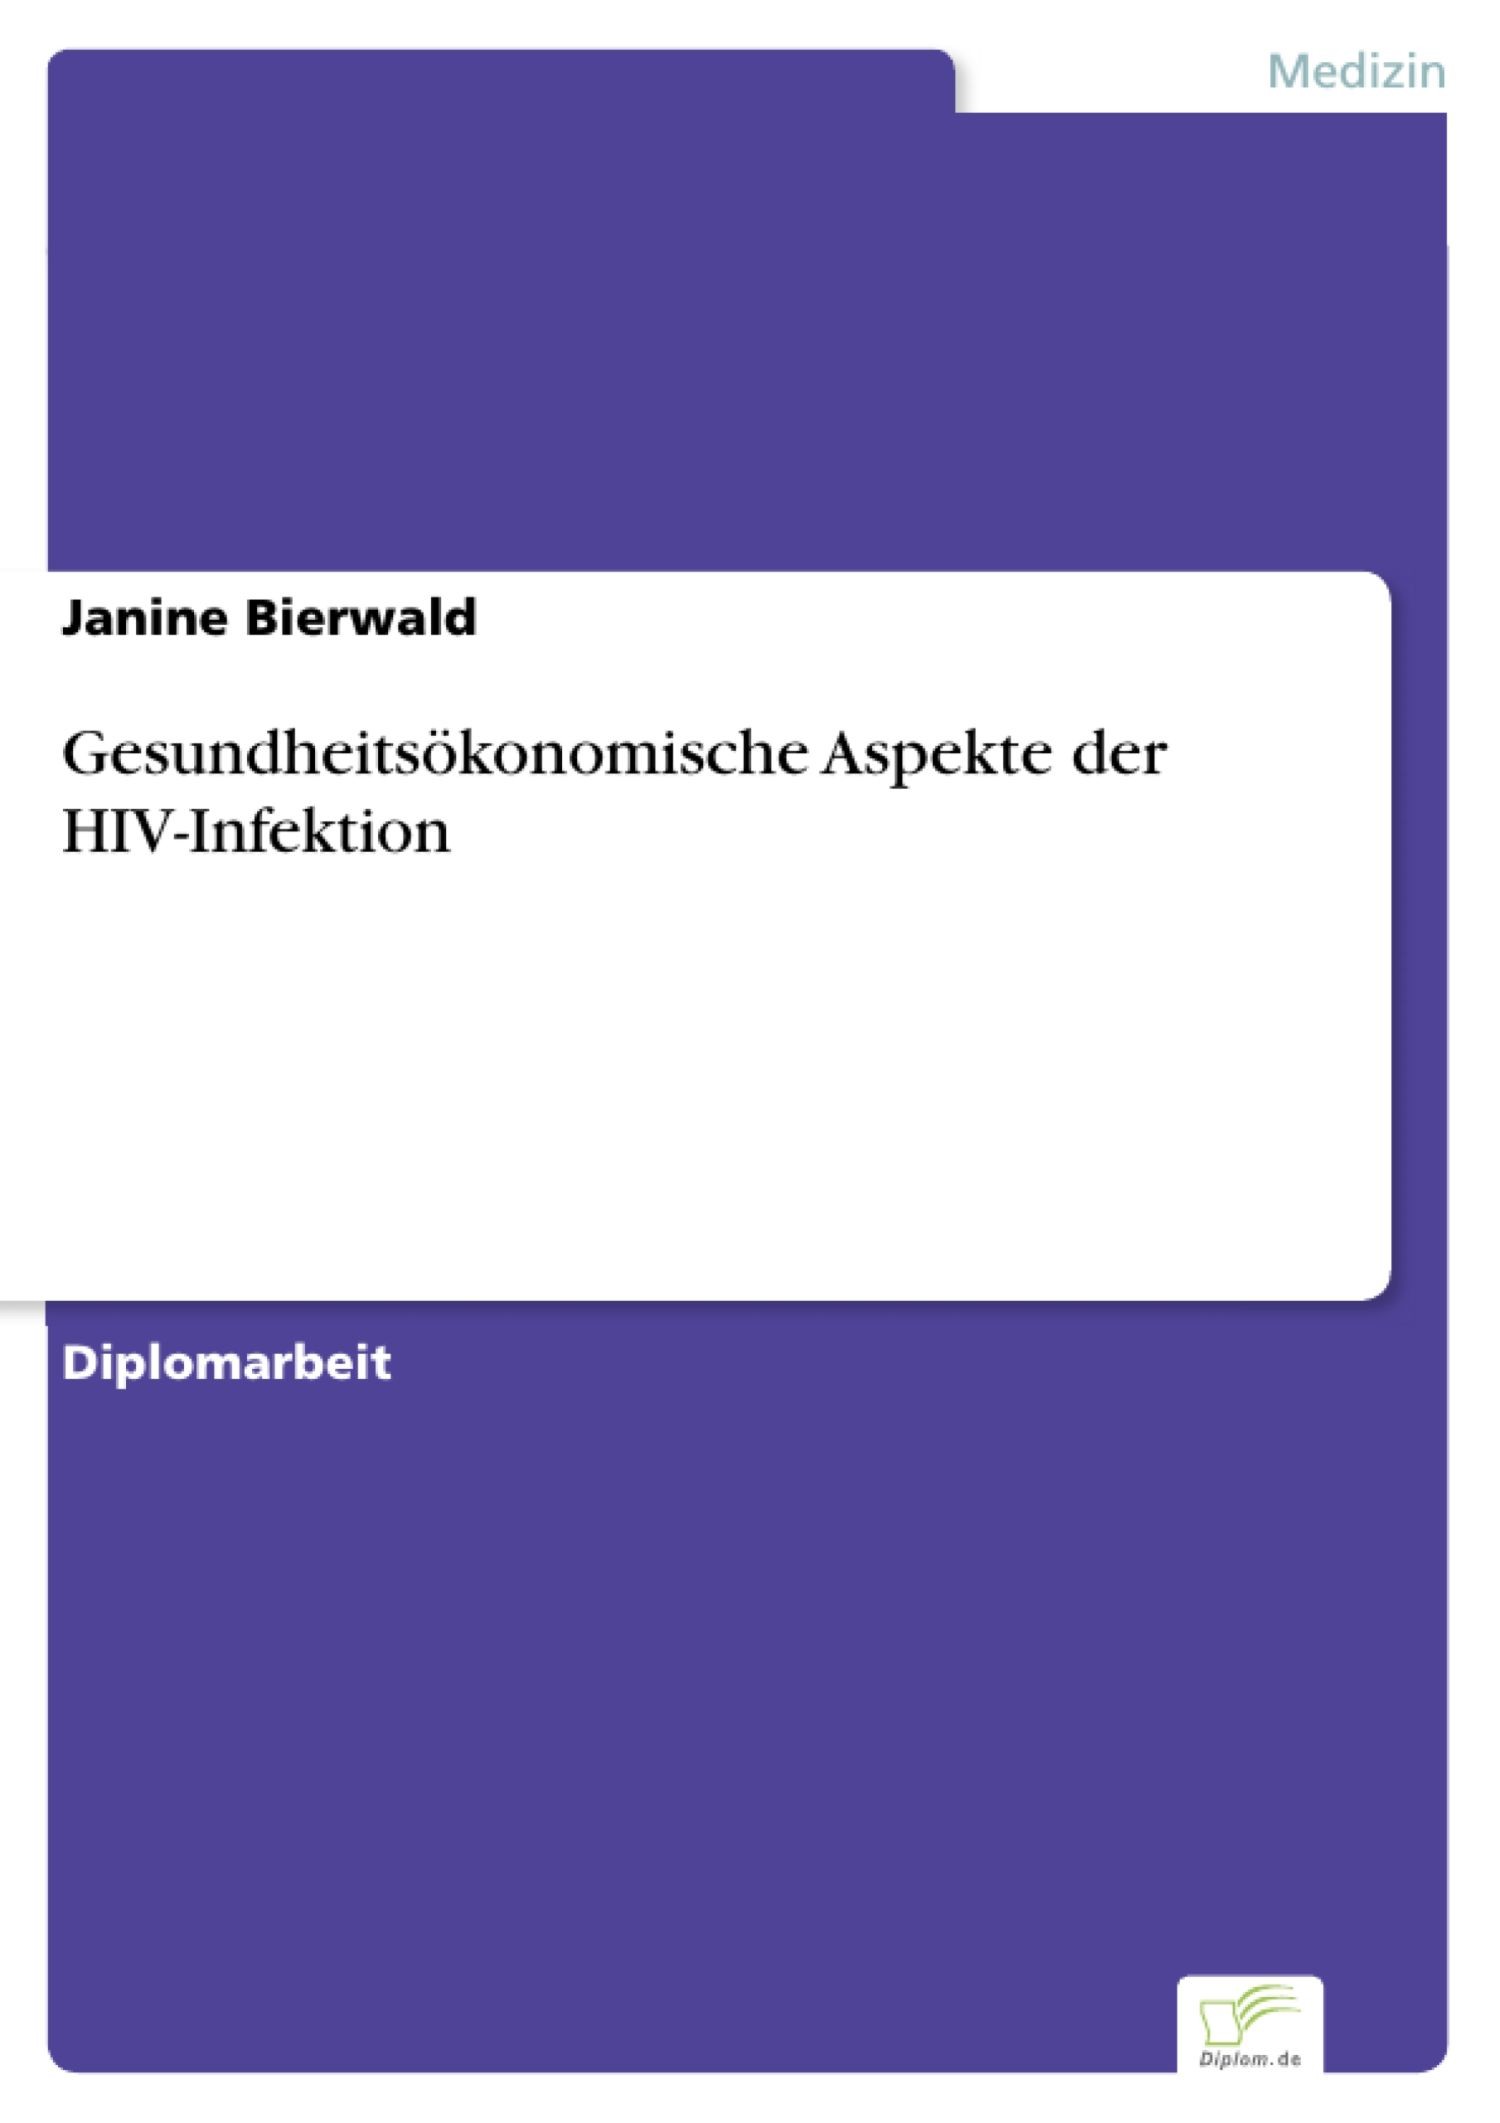 Gesundheitsökonomische Aspekte der HIV-Infektion